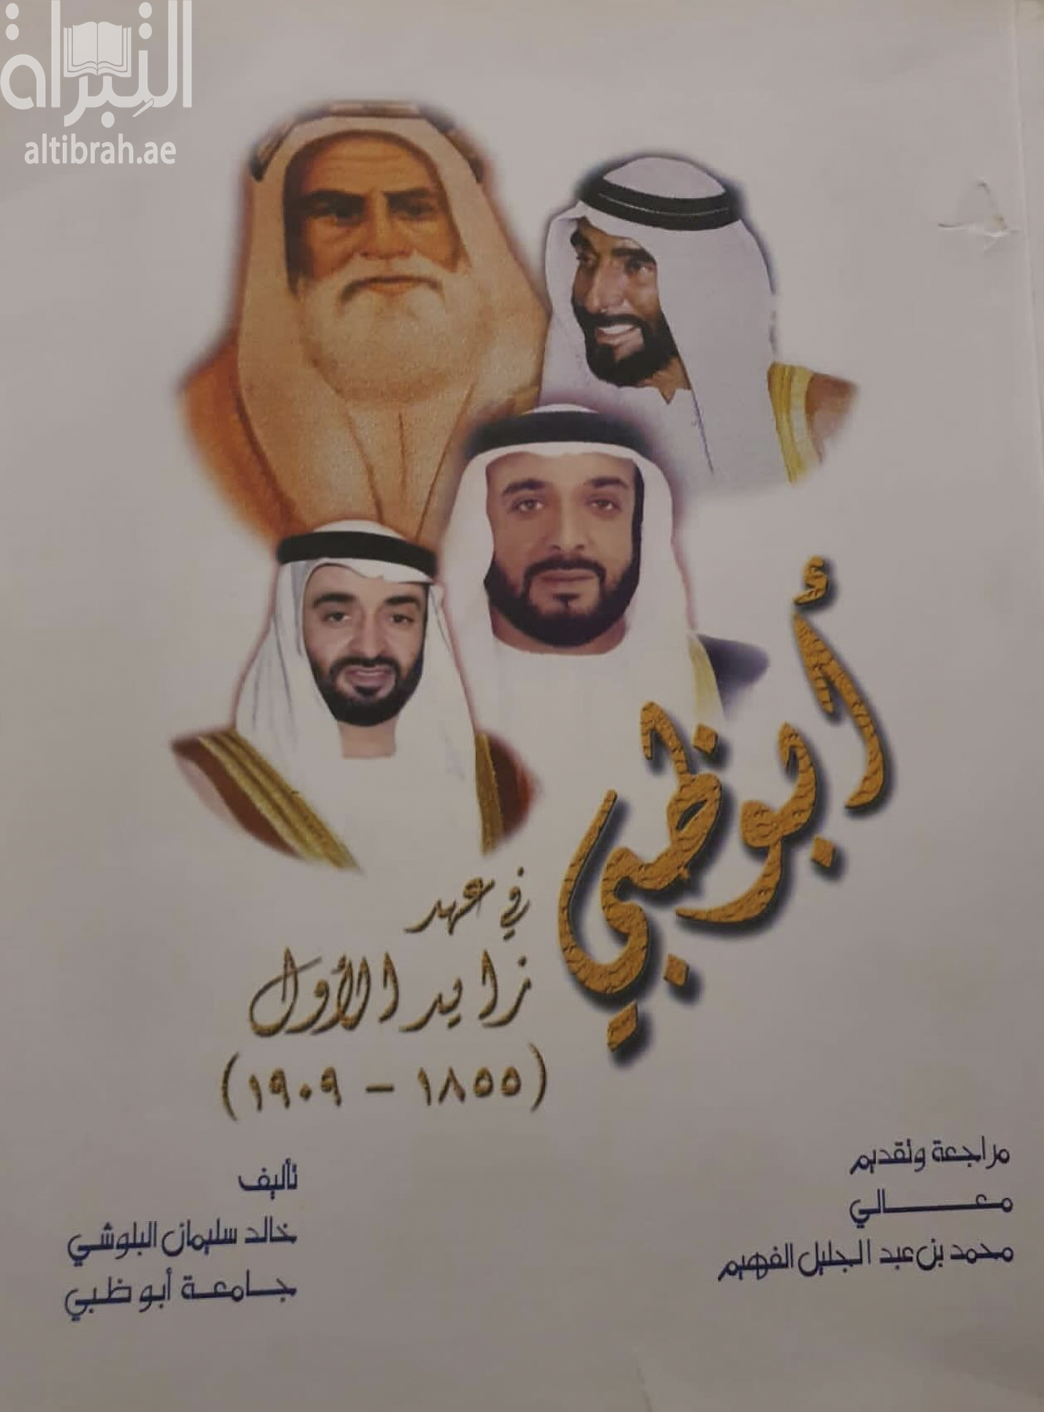 كتاب أبوظبي في عهد زايد الأول ( 1855 - 1909 )